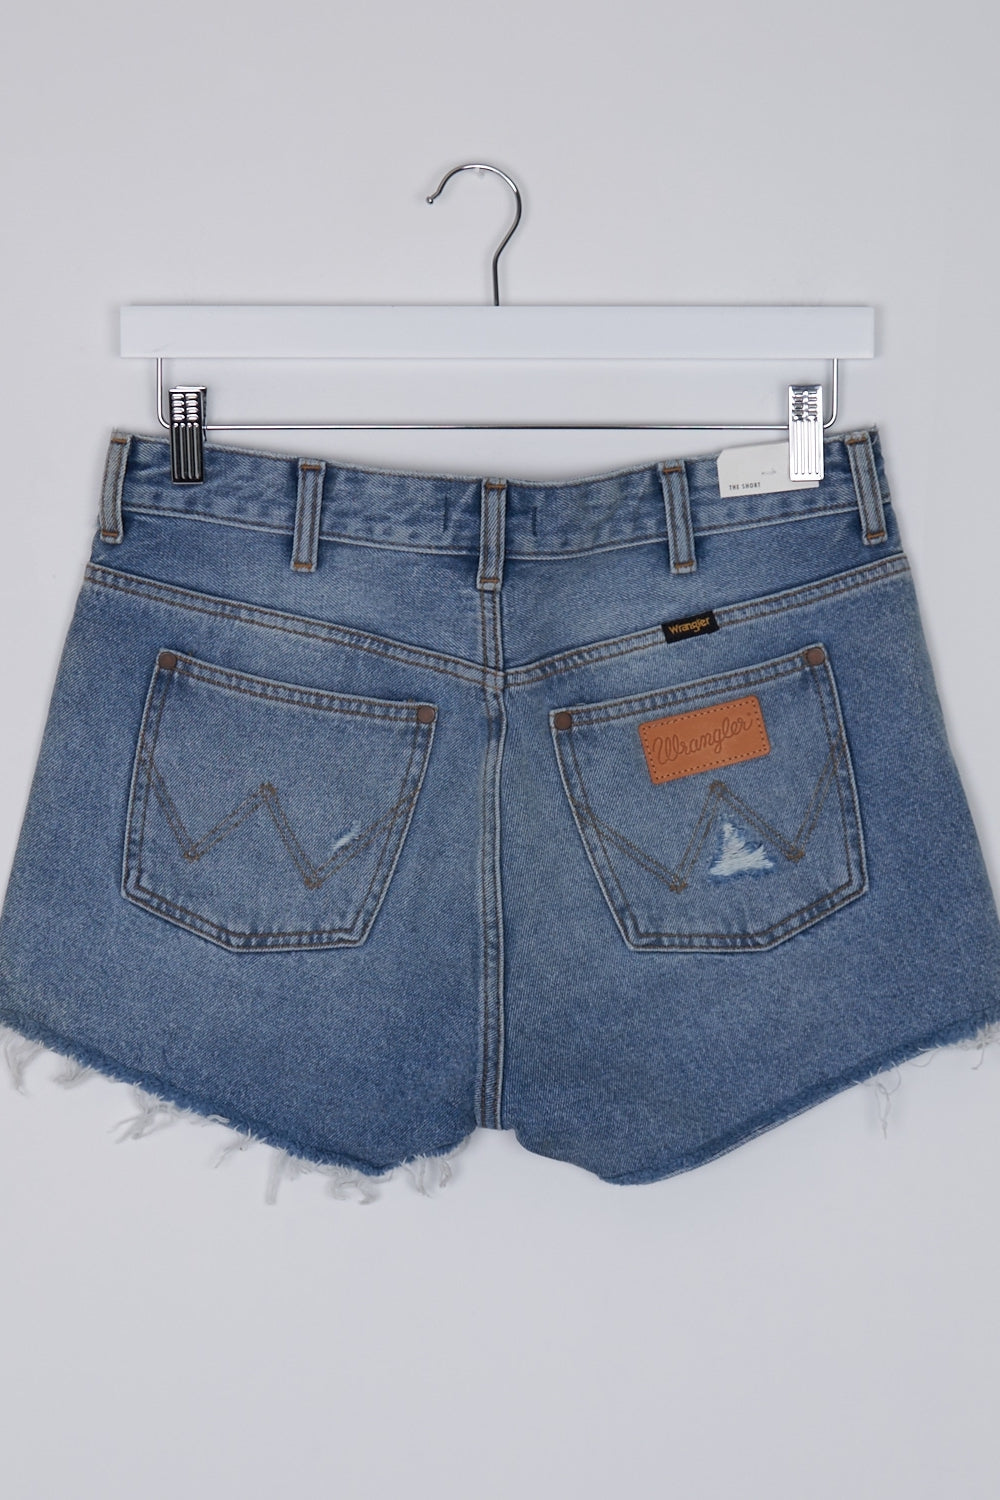 Wrangler Blue  Denim Shorts S